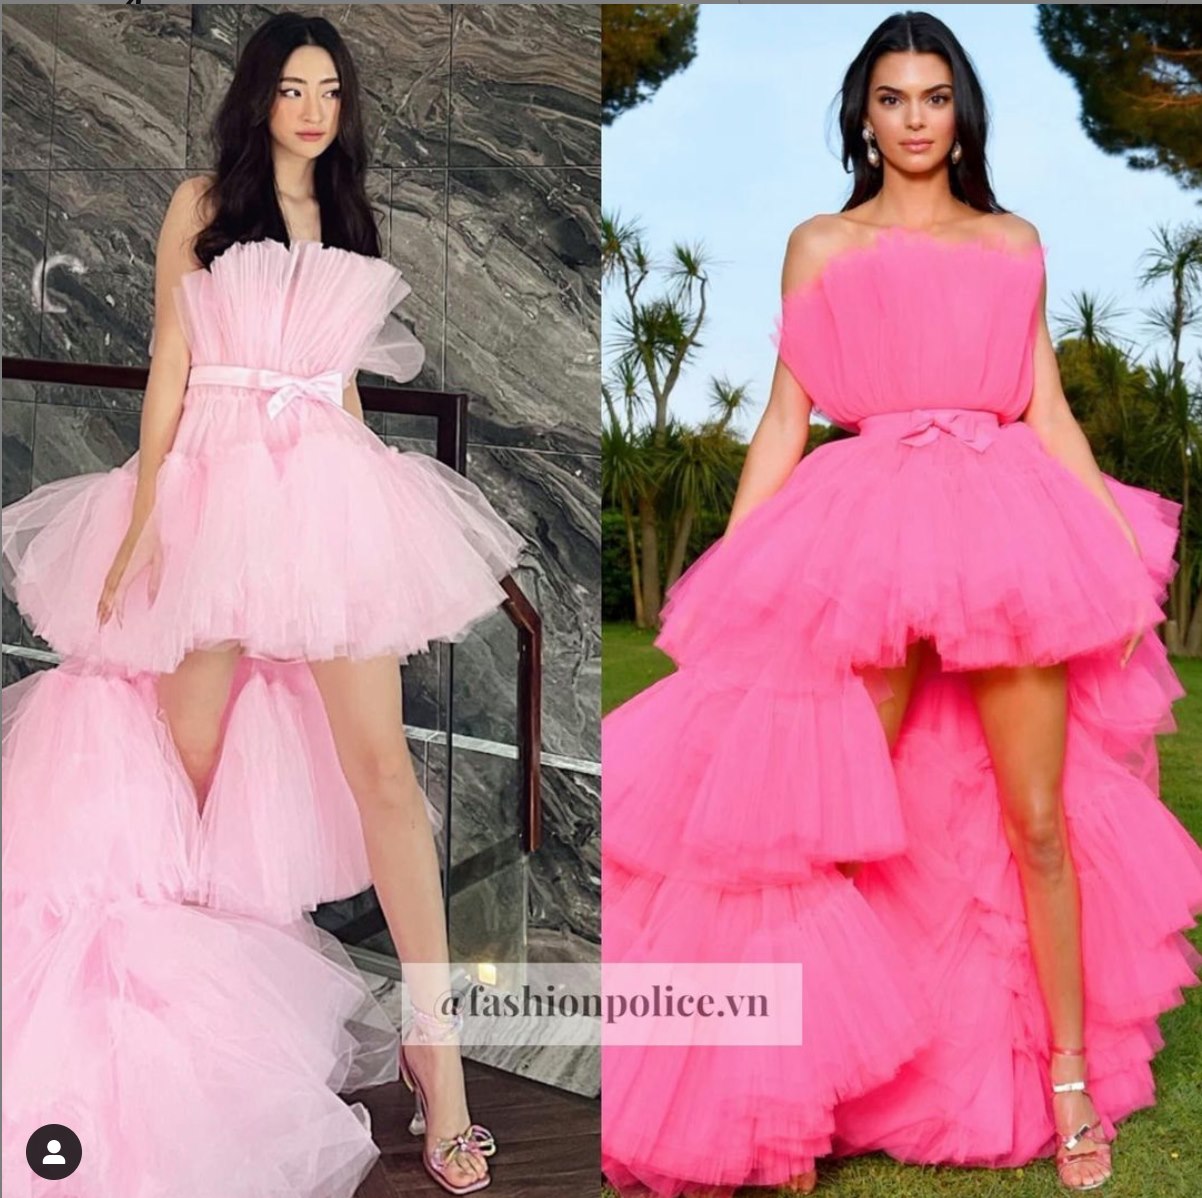 Chiếc váy từng được Kendall Jenner mặc thuộc thương hiệu Giambattista Valli x H&M nay lại xuất hiện với Lương Thuỳ Linh và gắn mác thiết kế của nhà thiết kế Việt. Ảnh: @fashionpolice.vn